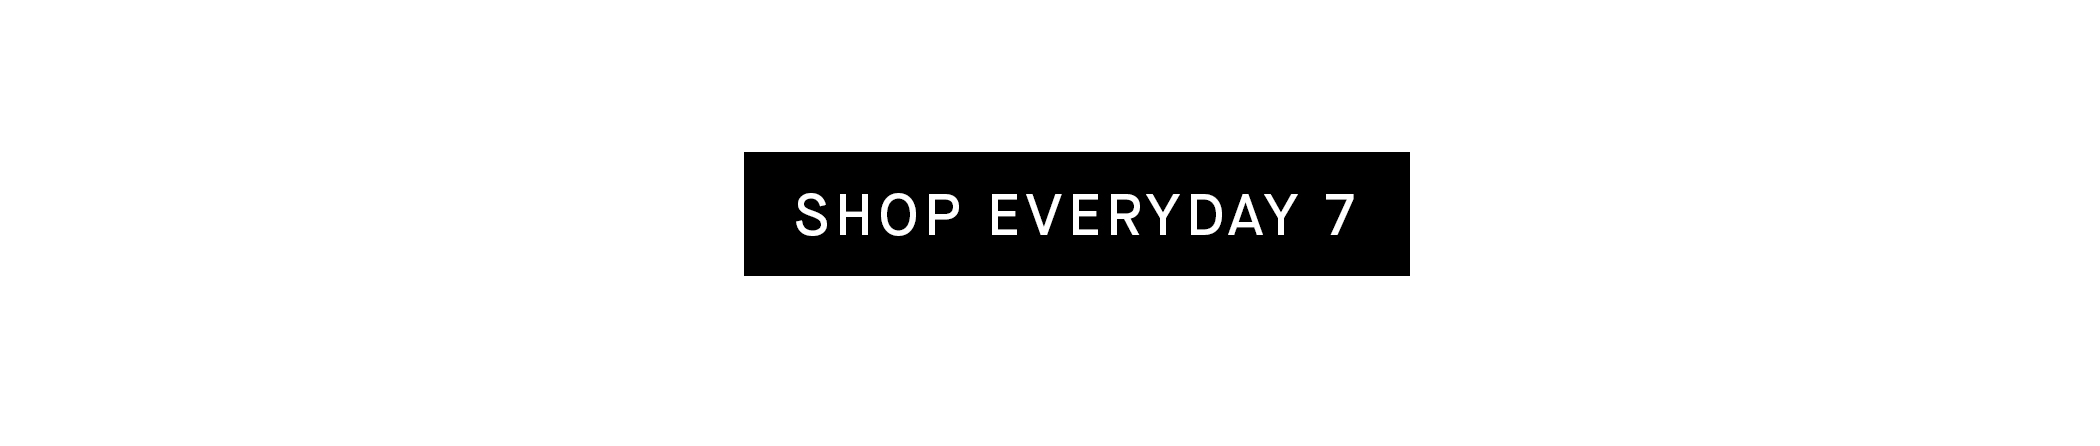 Shop | Men's Everday 7 | Authentic Denim SHOP EVERYDAY 7 